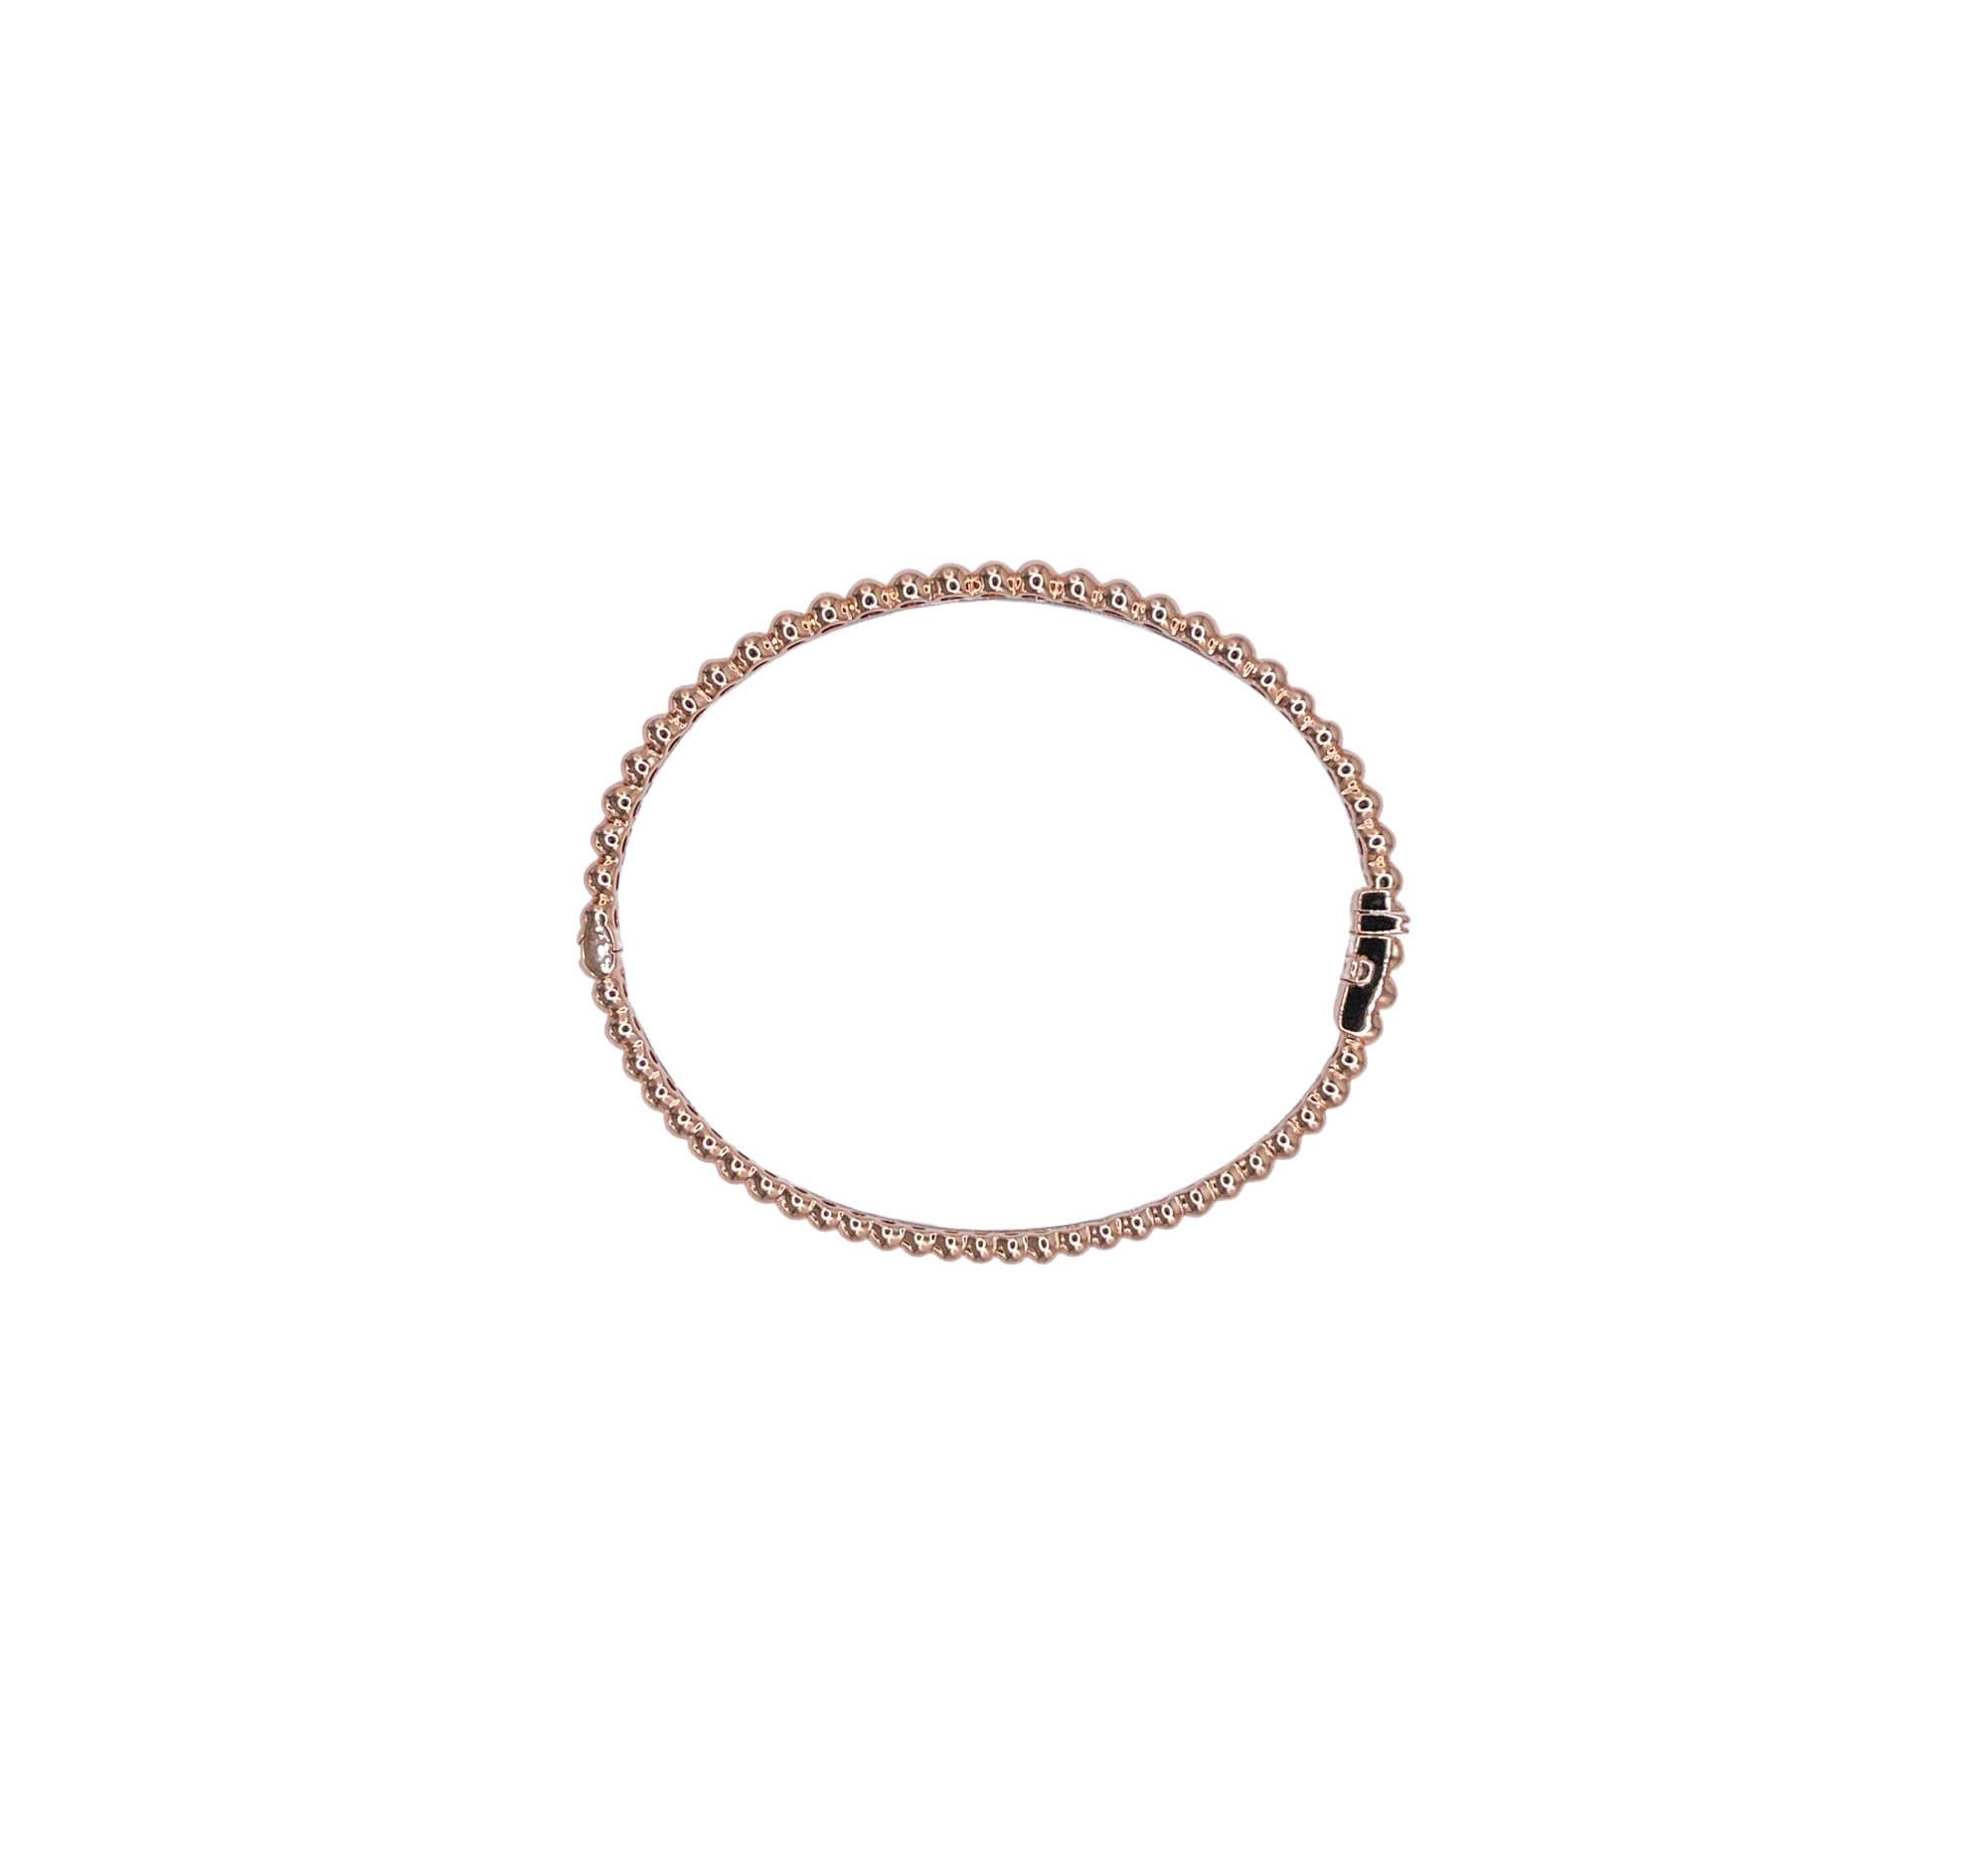 Sofragem Bracelet en or rose et blanc 18 carats avec perles de diamants
Sertie de diamants ronds et brillants ; le poids total est de 0,33 ctw.
Le bracelet a une largeur de 5,52 mm et le diamètre du bangle est de 2,5 pouces.
Le poids total du